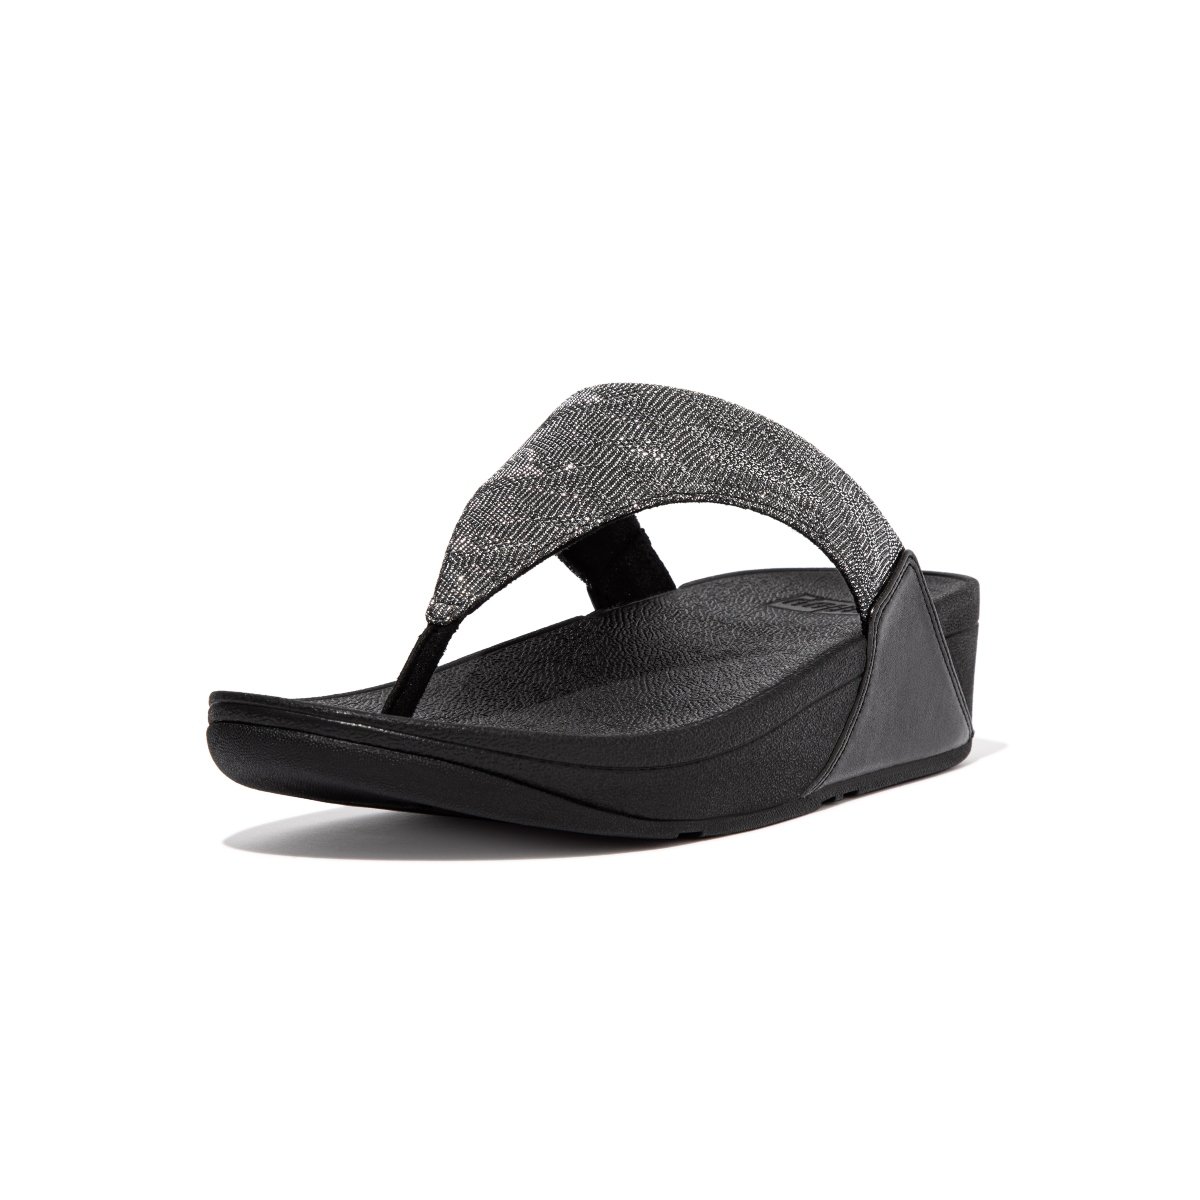 FitFlop LULU Glitz Toe-Post Sandals All Black side view